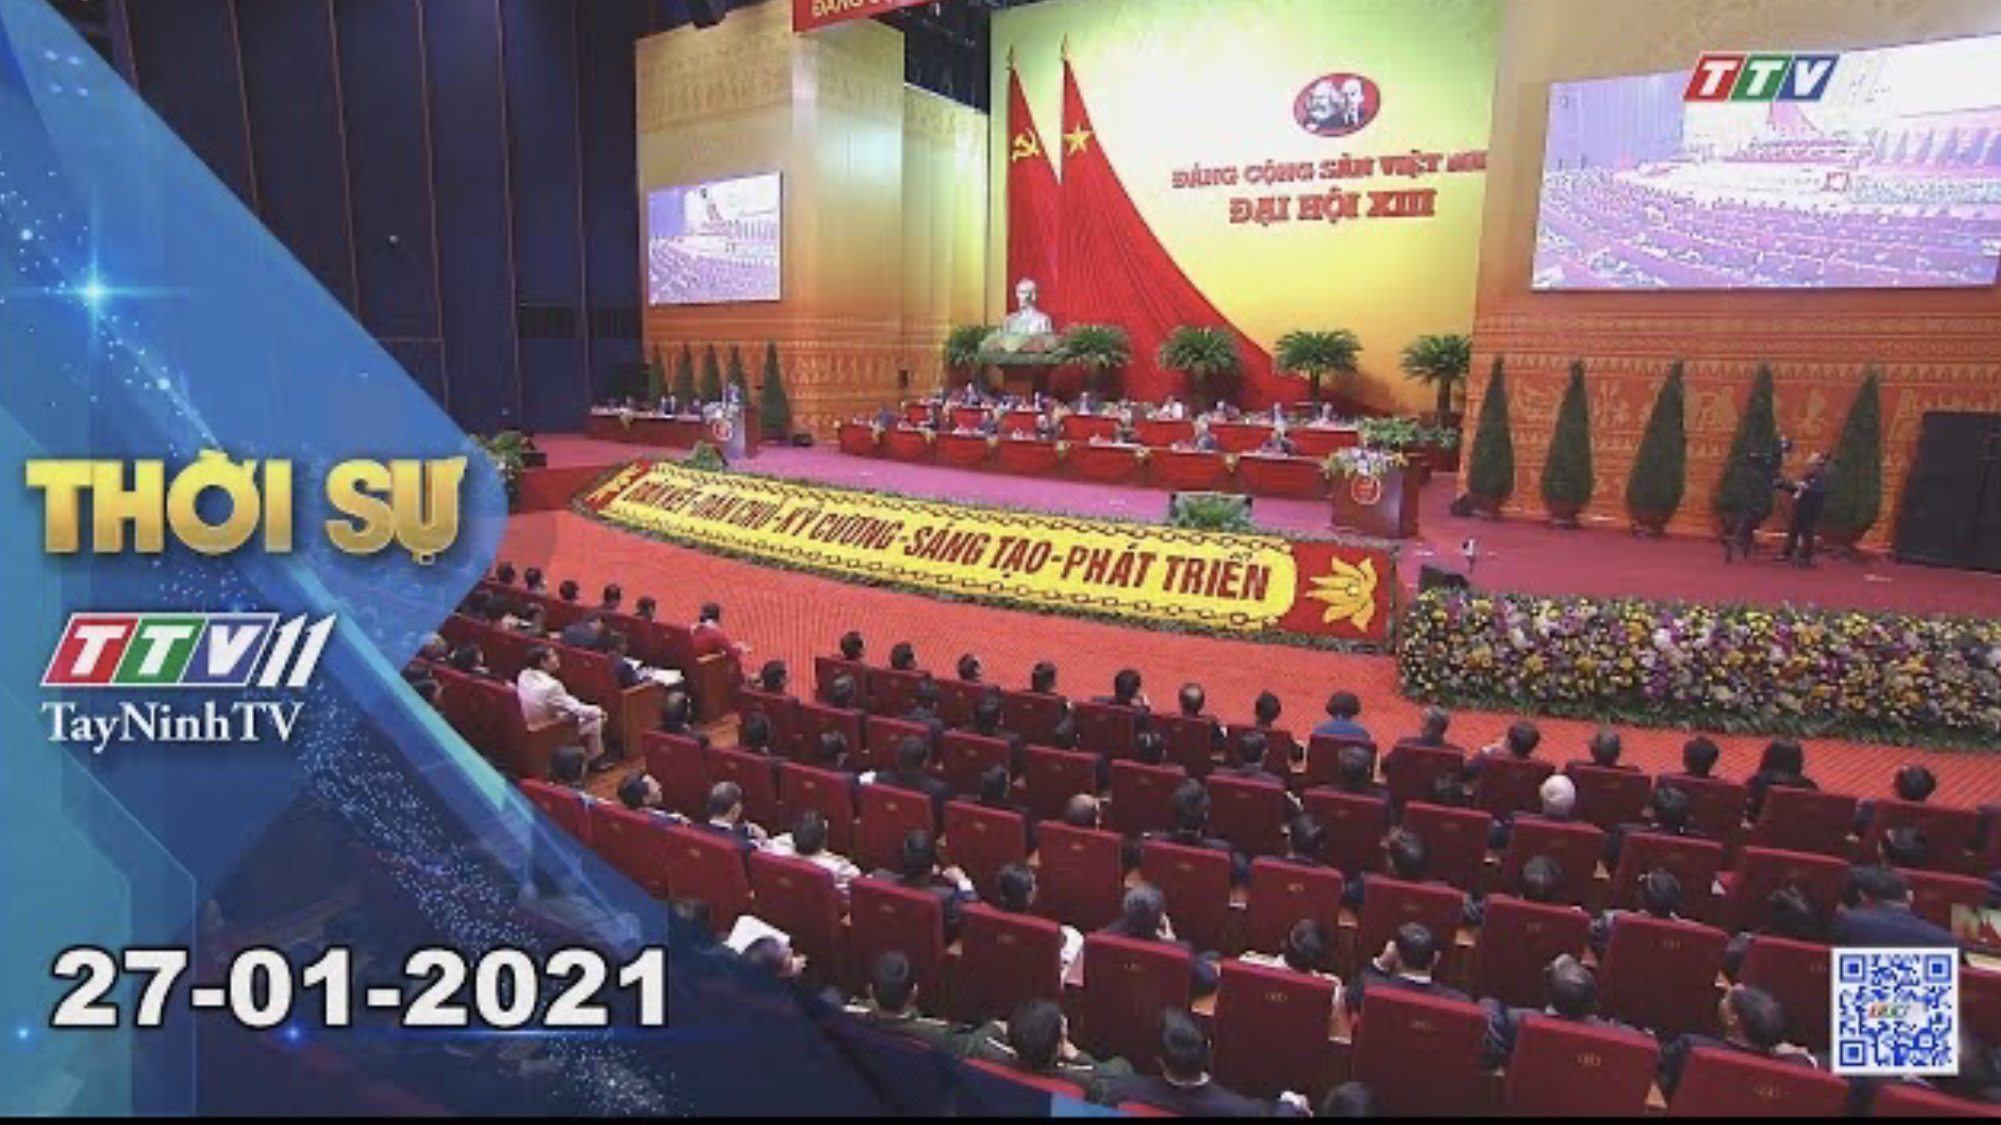 Thời sự Tây Ninh 27-01-2021 | Tin tức hôm nay | TayNinhTV